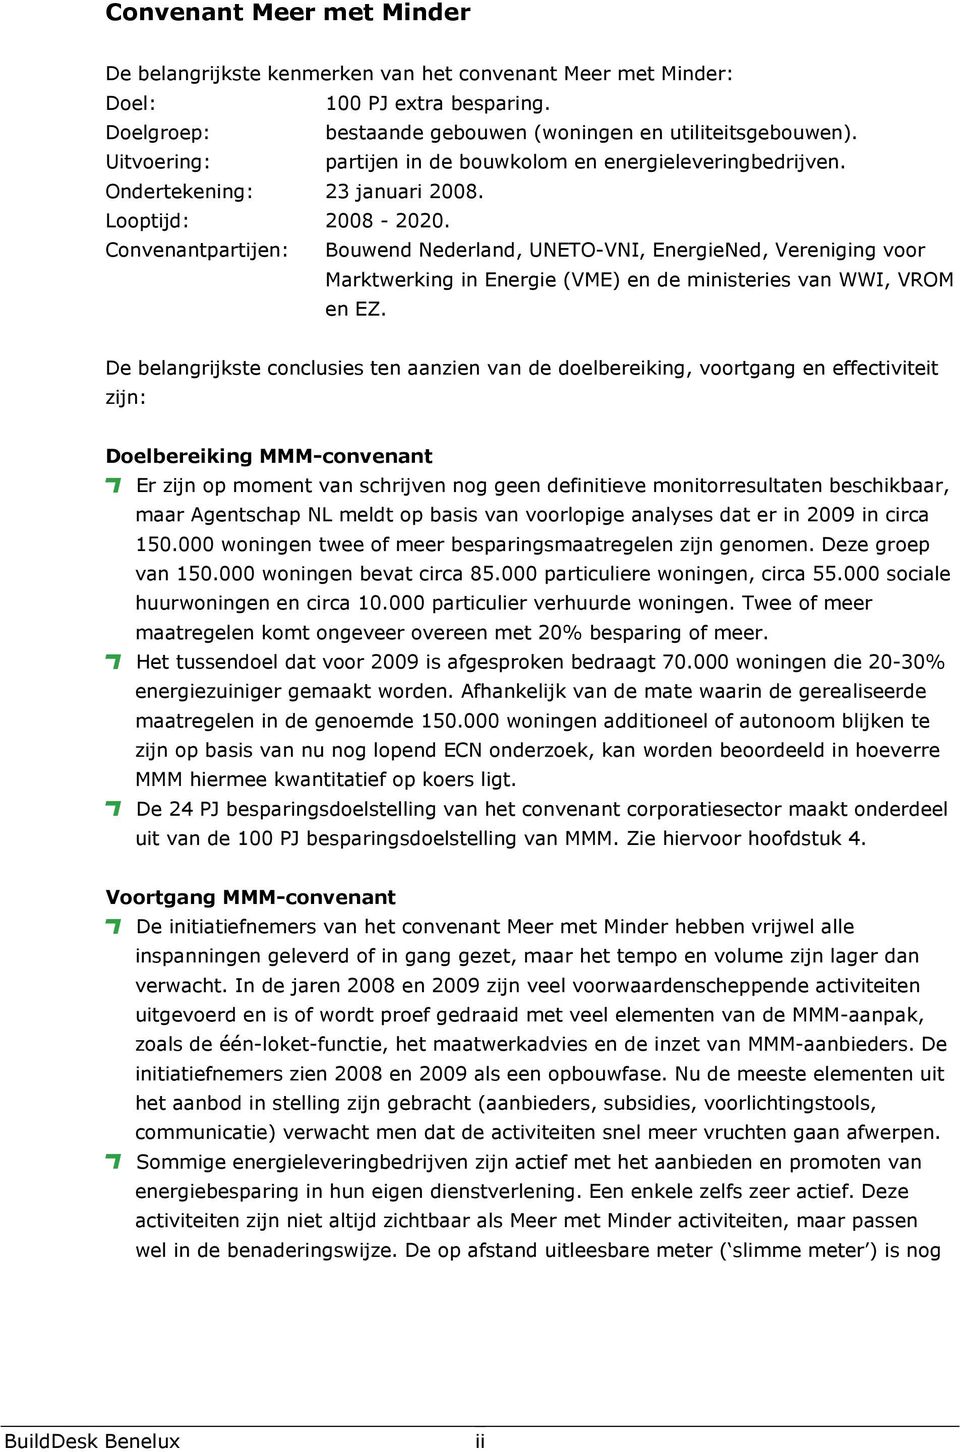 Convenantpartijen: Bouwend Nederland, UNETO-VNI, EnergieNed, Vereniging voor Marktwerking in Energie (VME) en de ministeries van WWI, VROM en EZ.